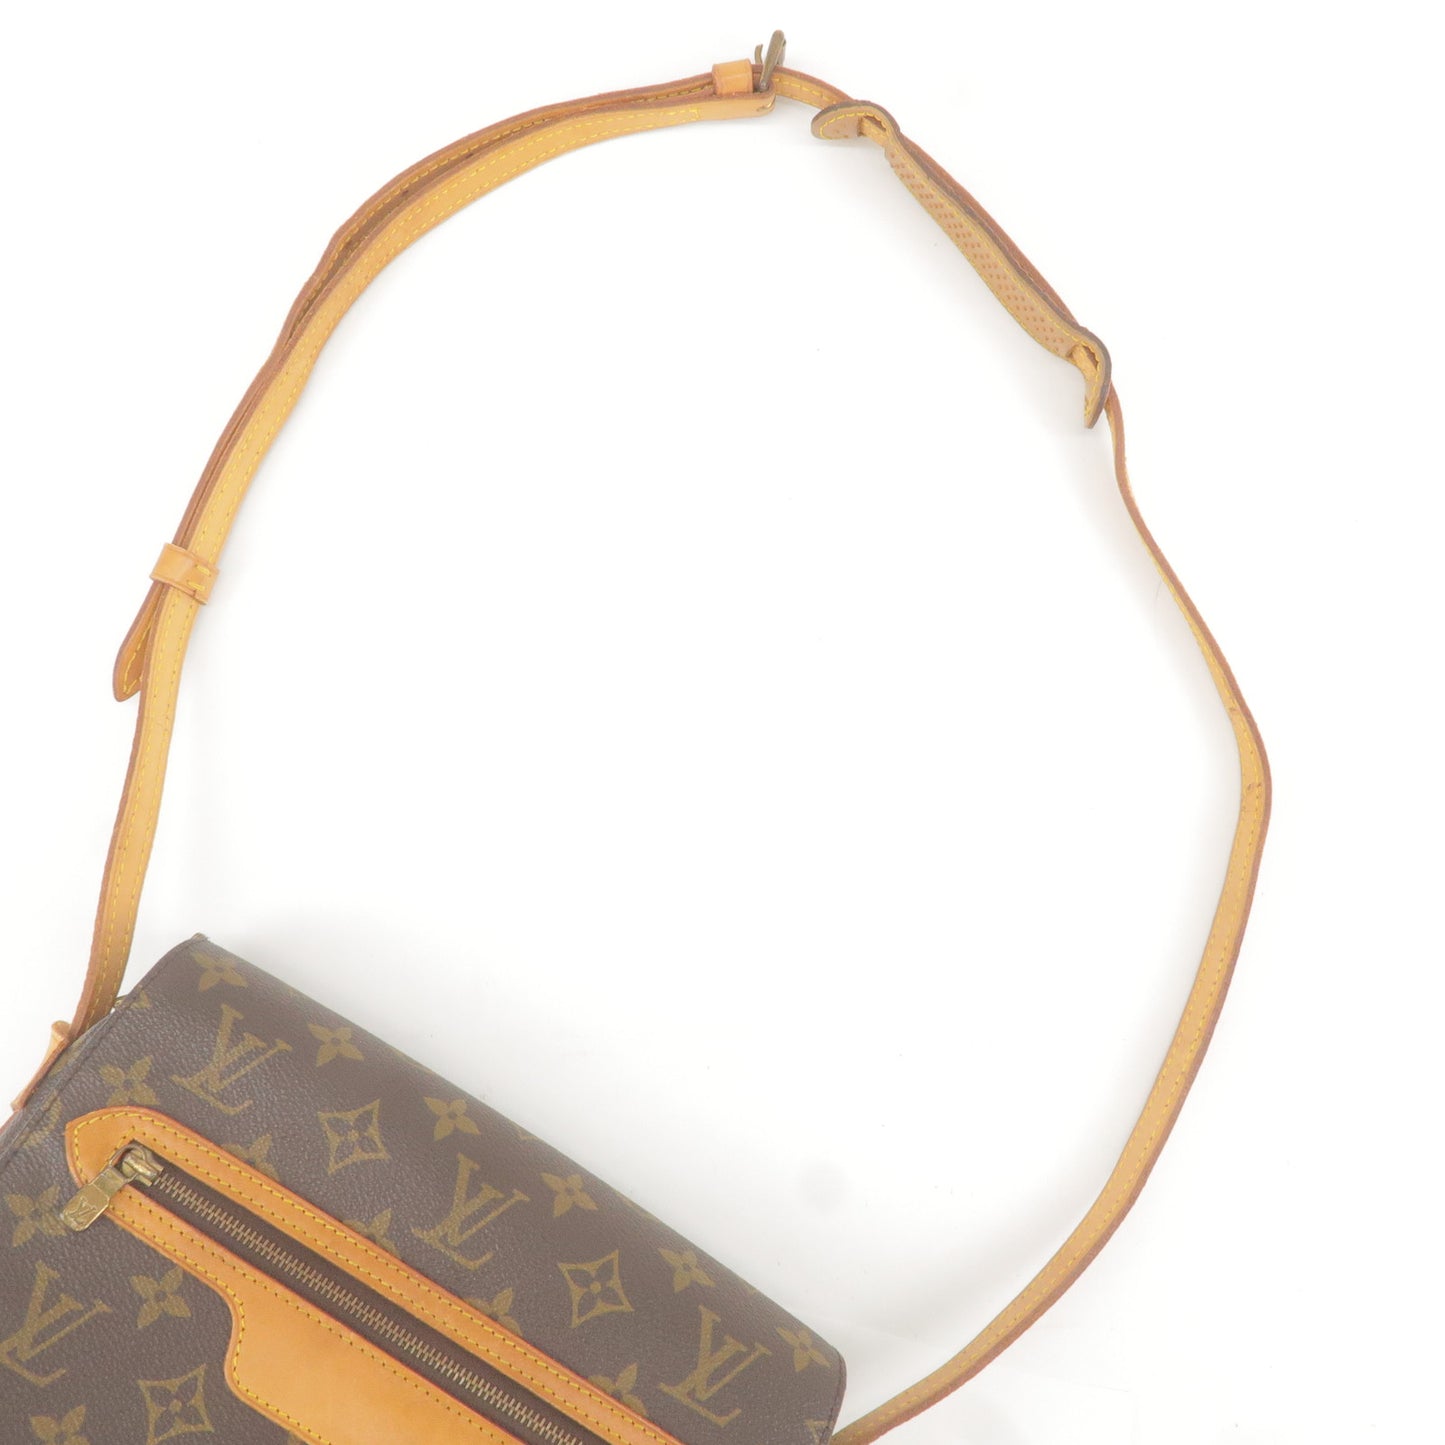 Louis Vuitton Saint Germain 24 Shoulder Bag M51210 – Timeless